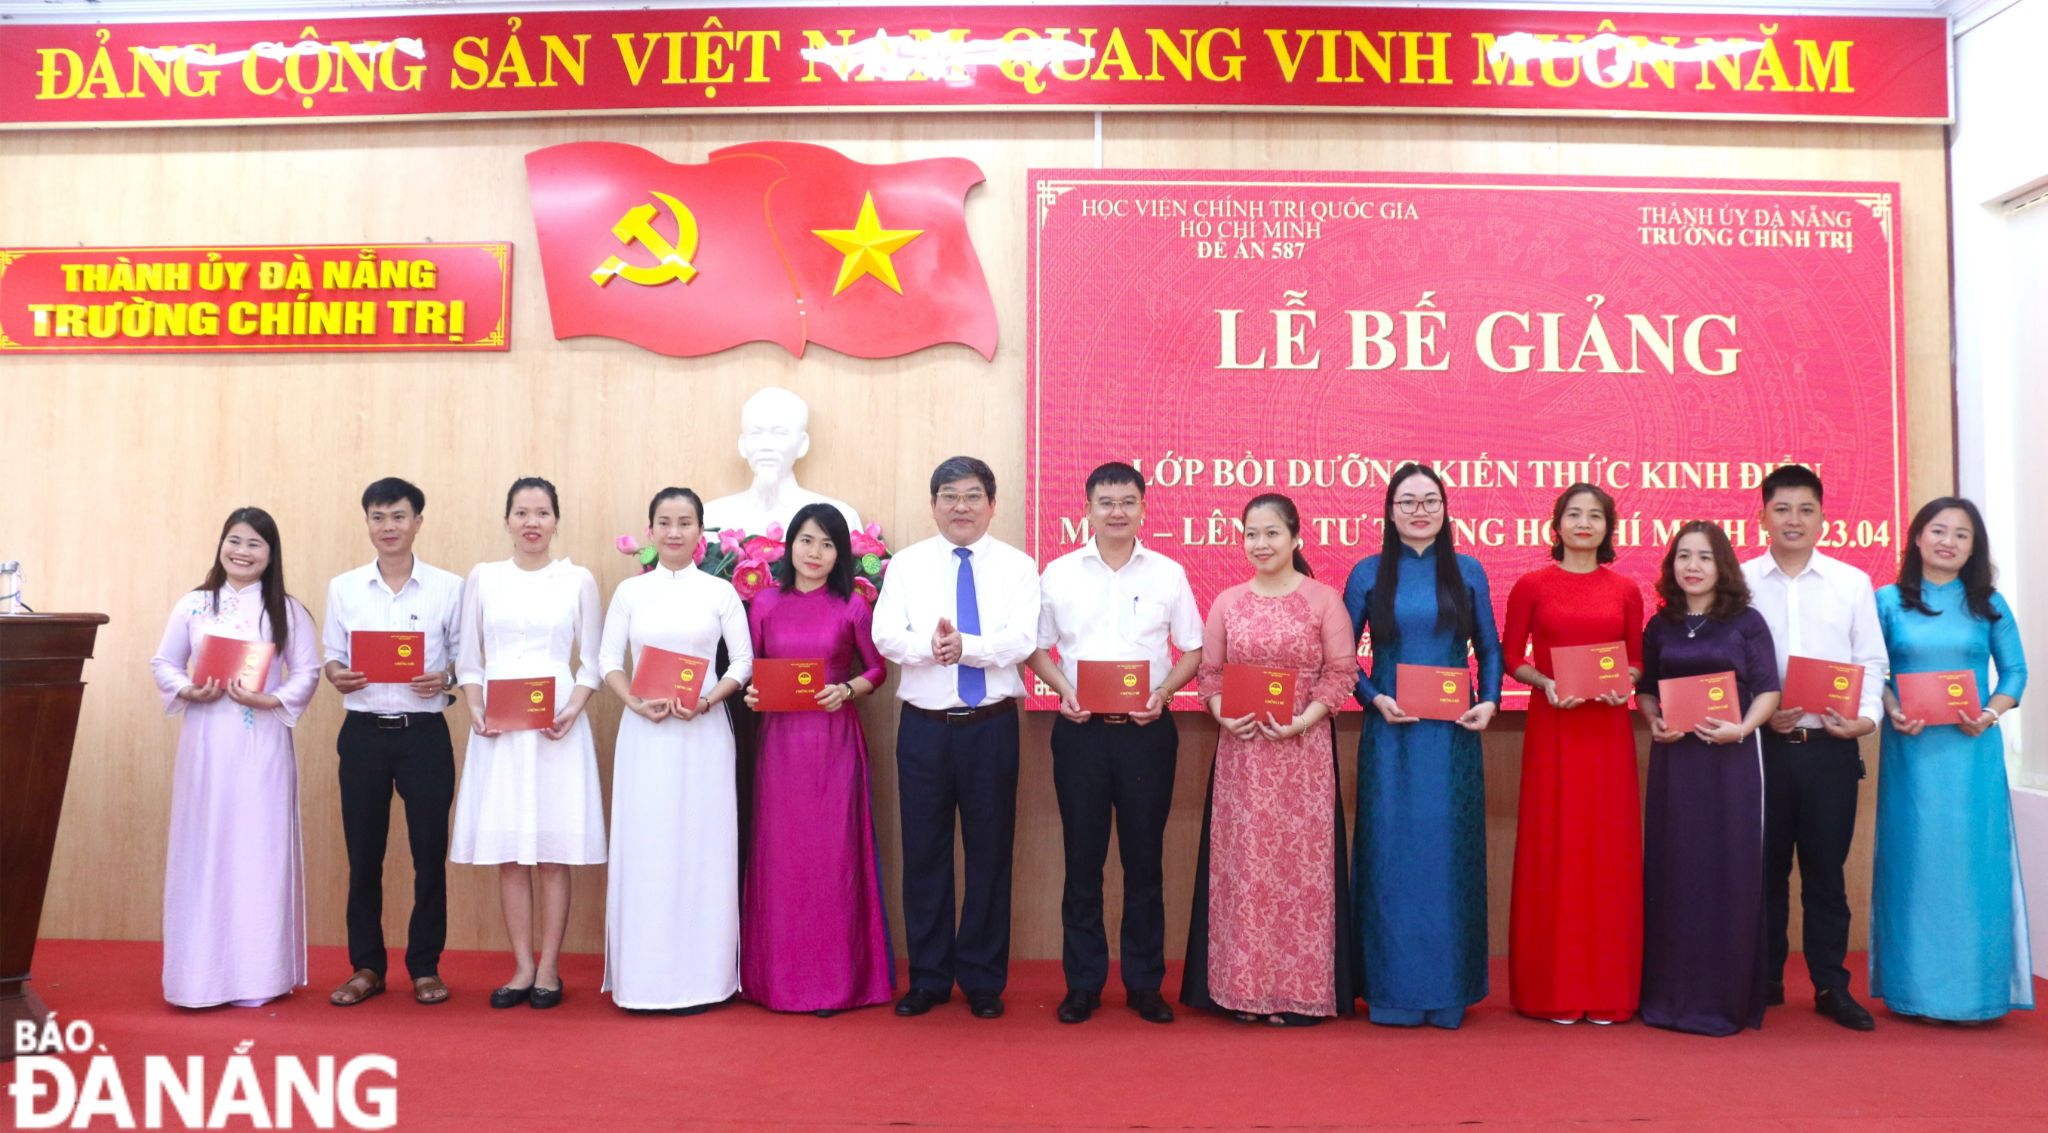 70 học viên hoàn thành lớp bồi dưỡng kiến thức kinh điển Mác-Lênin, tư tưởng Hồ Chí Minh